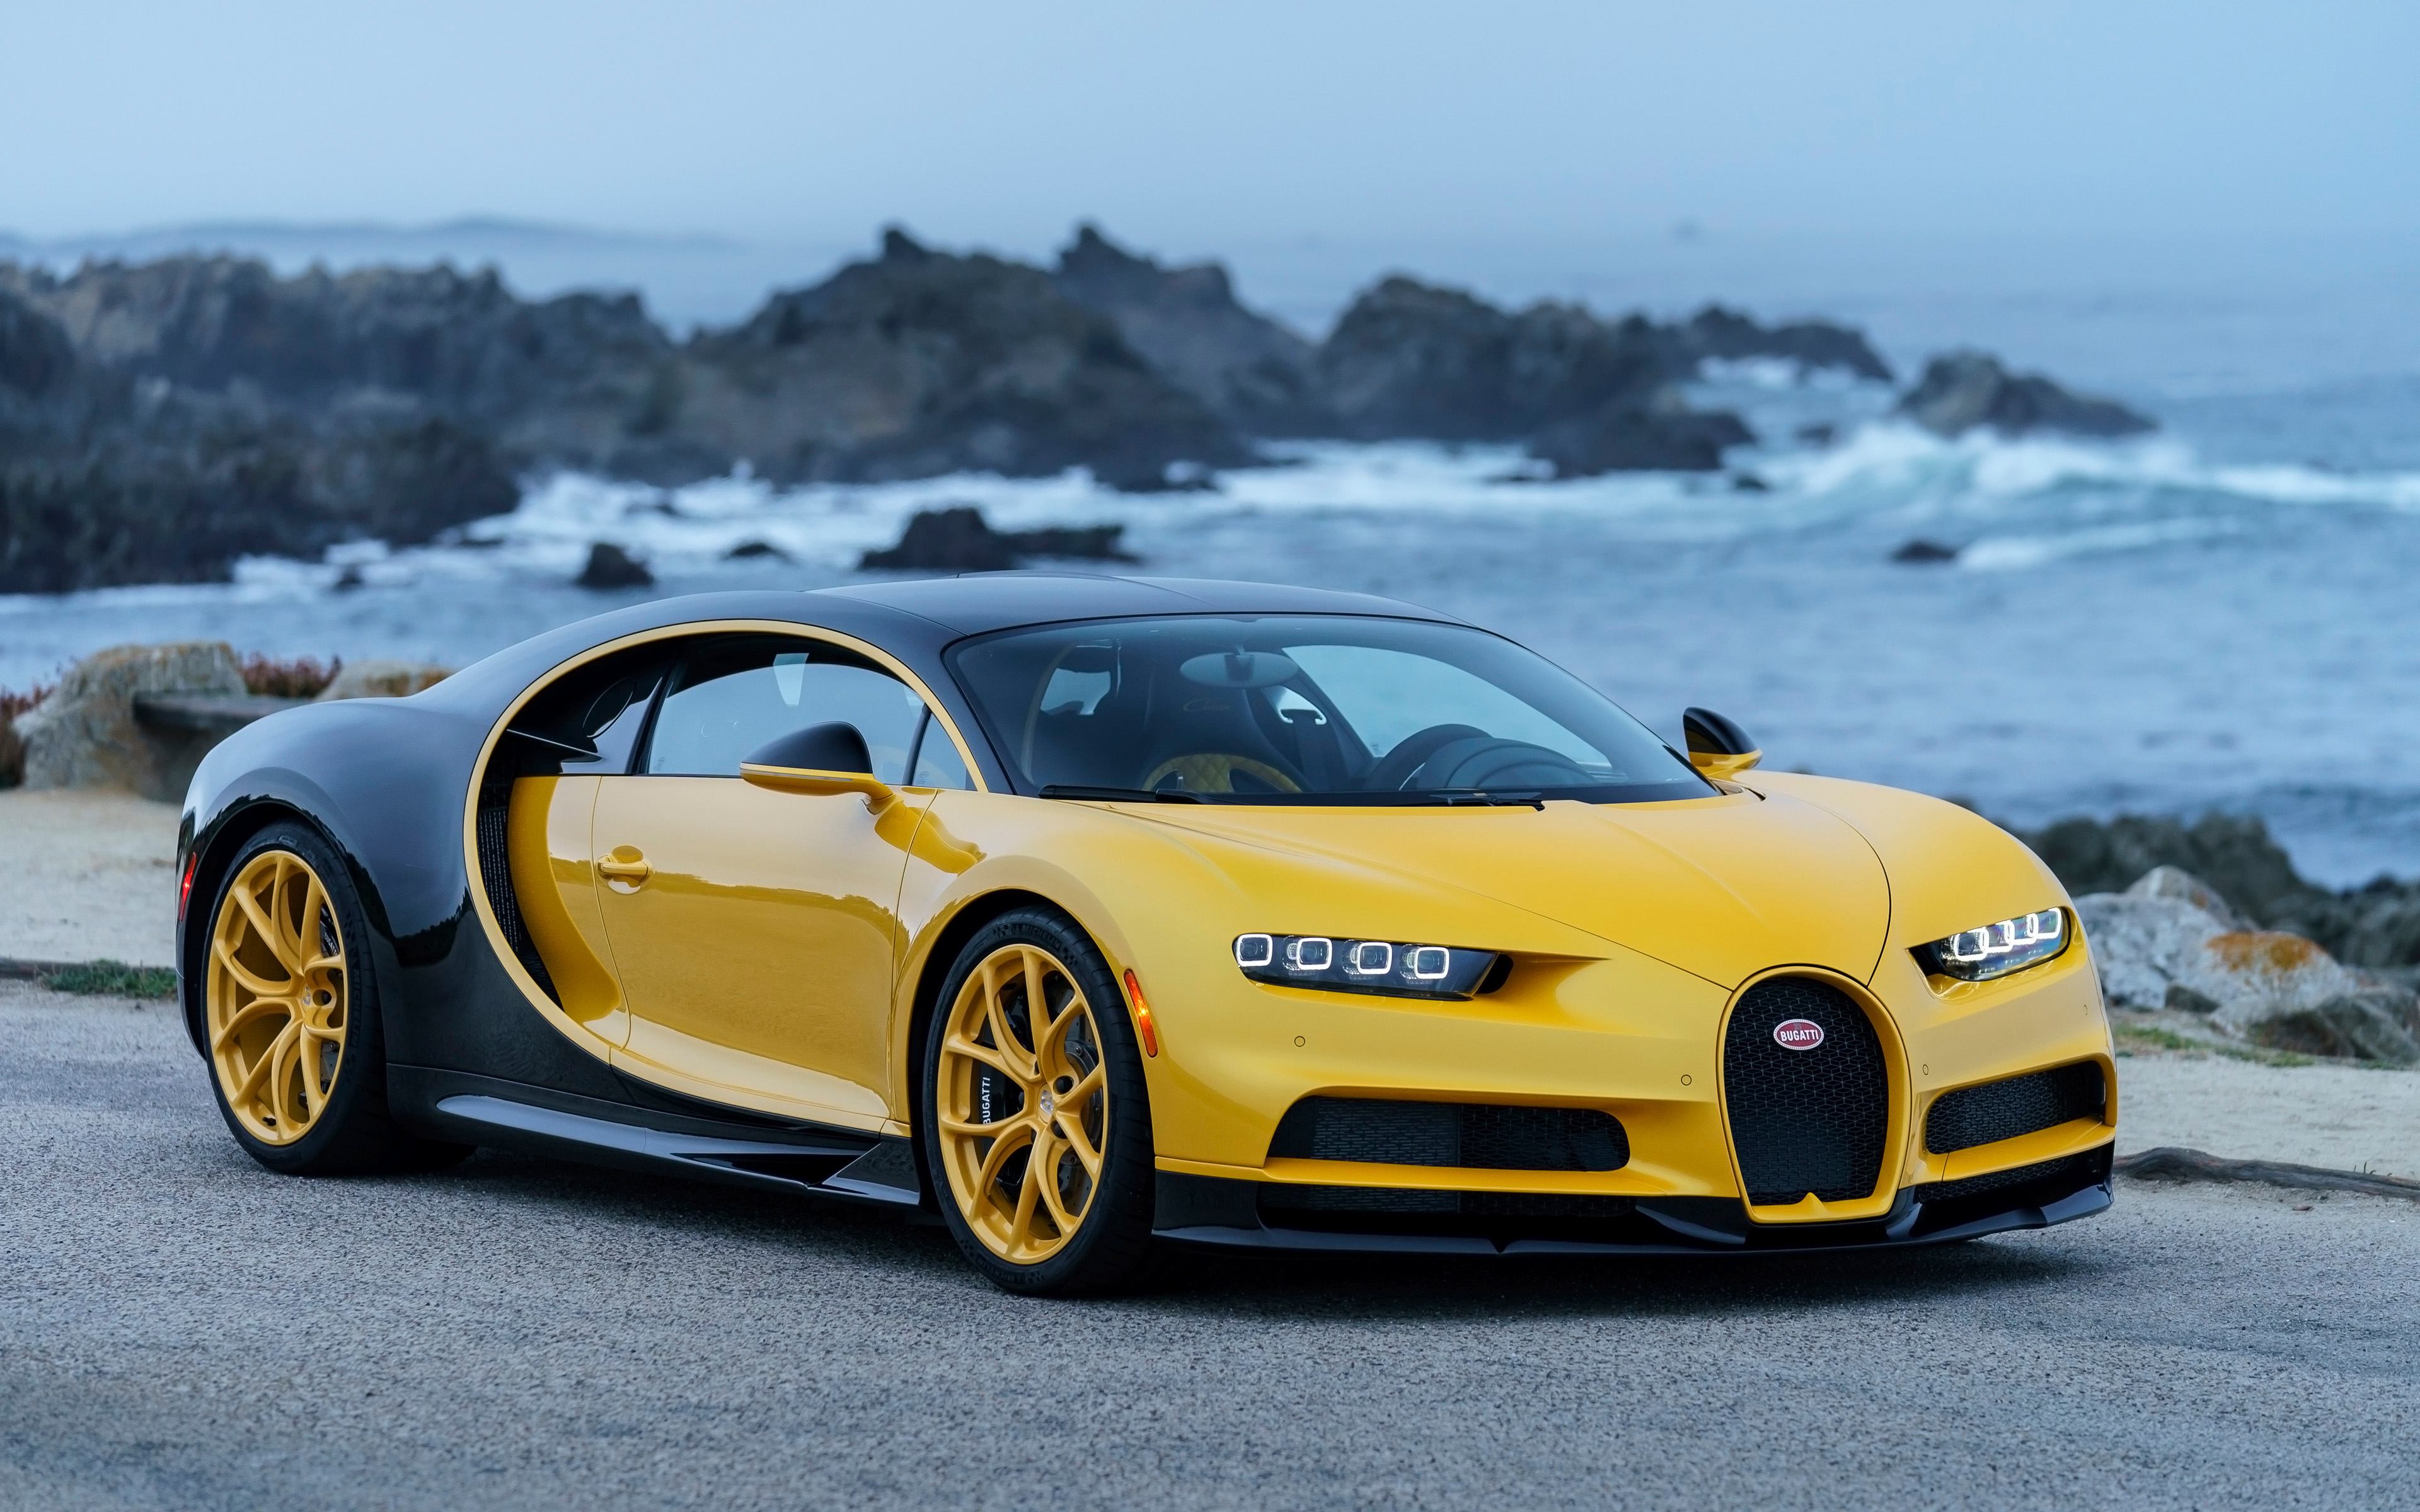 2018 Bugatti Chiron Yellow and Black 4K Wallpapers